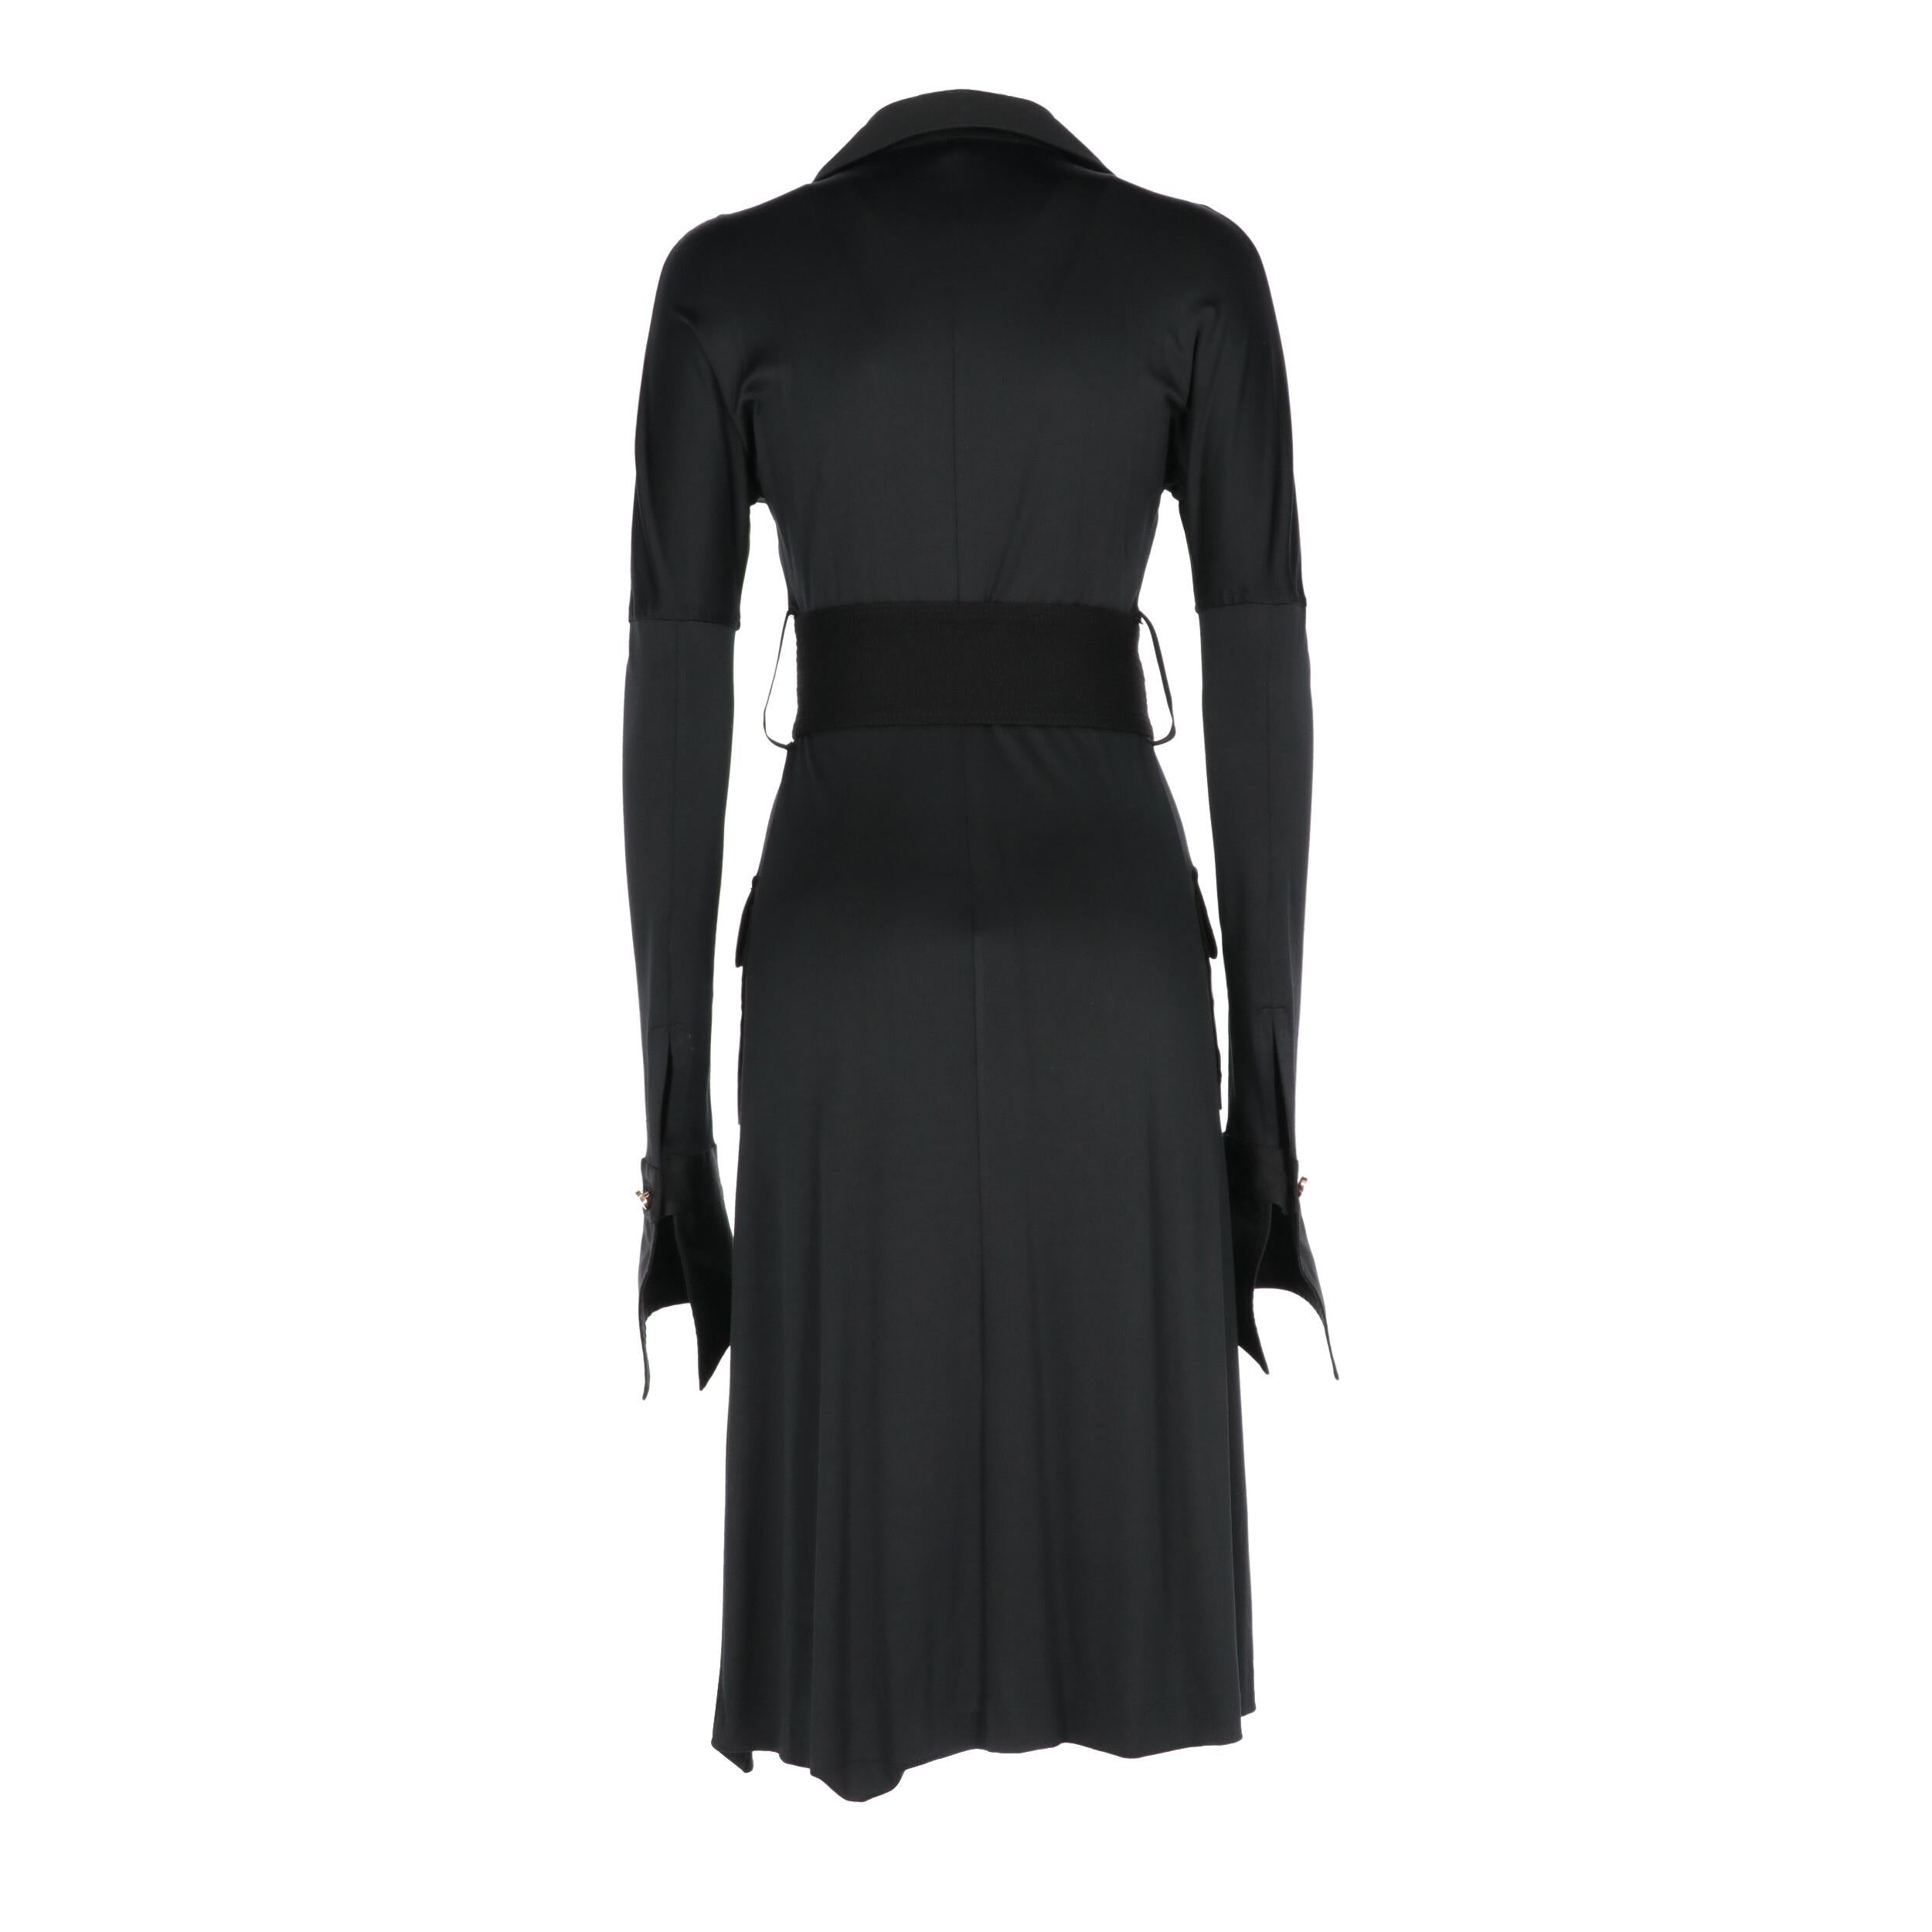 Women's 2000s Gianfranco Ferré Black Overcoat